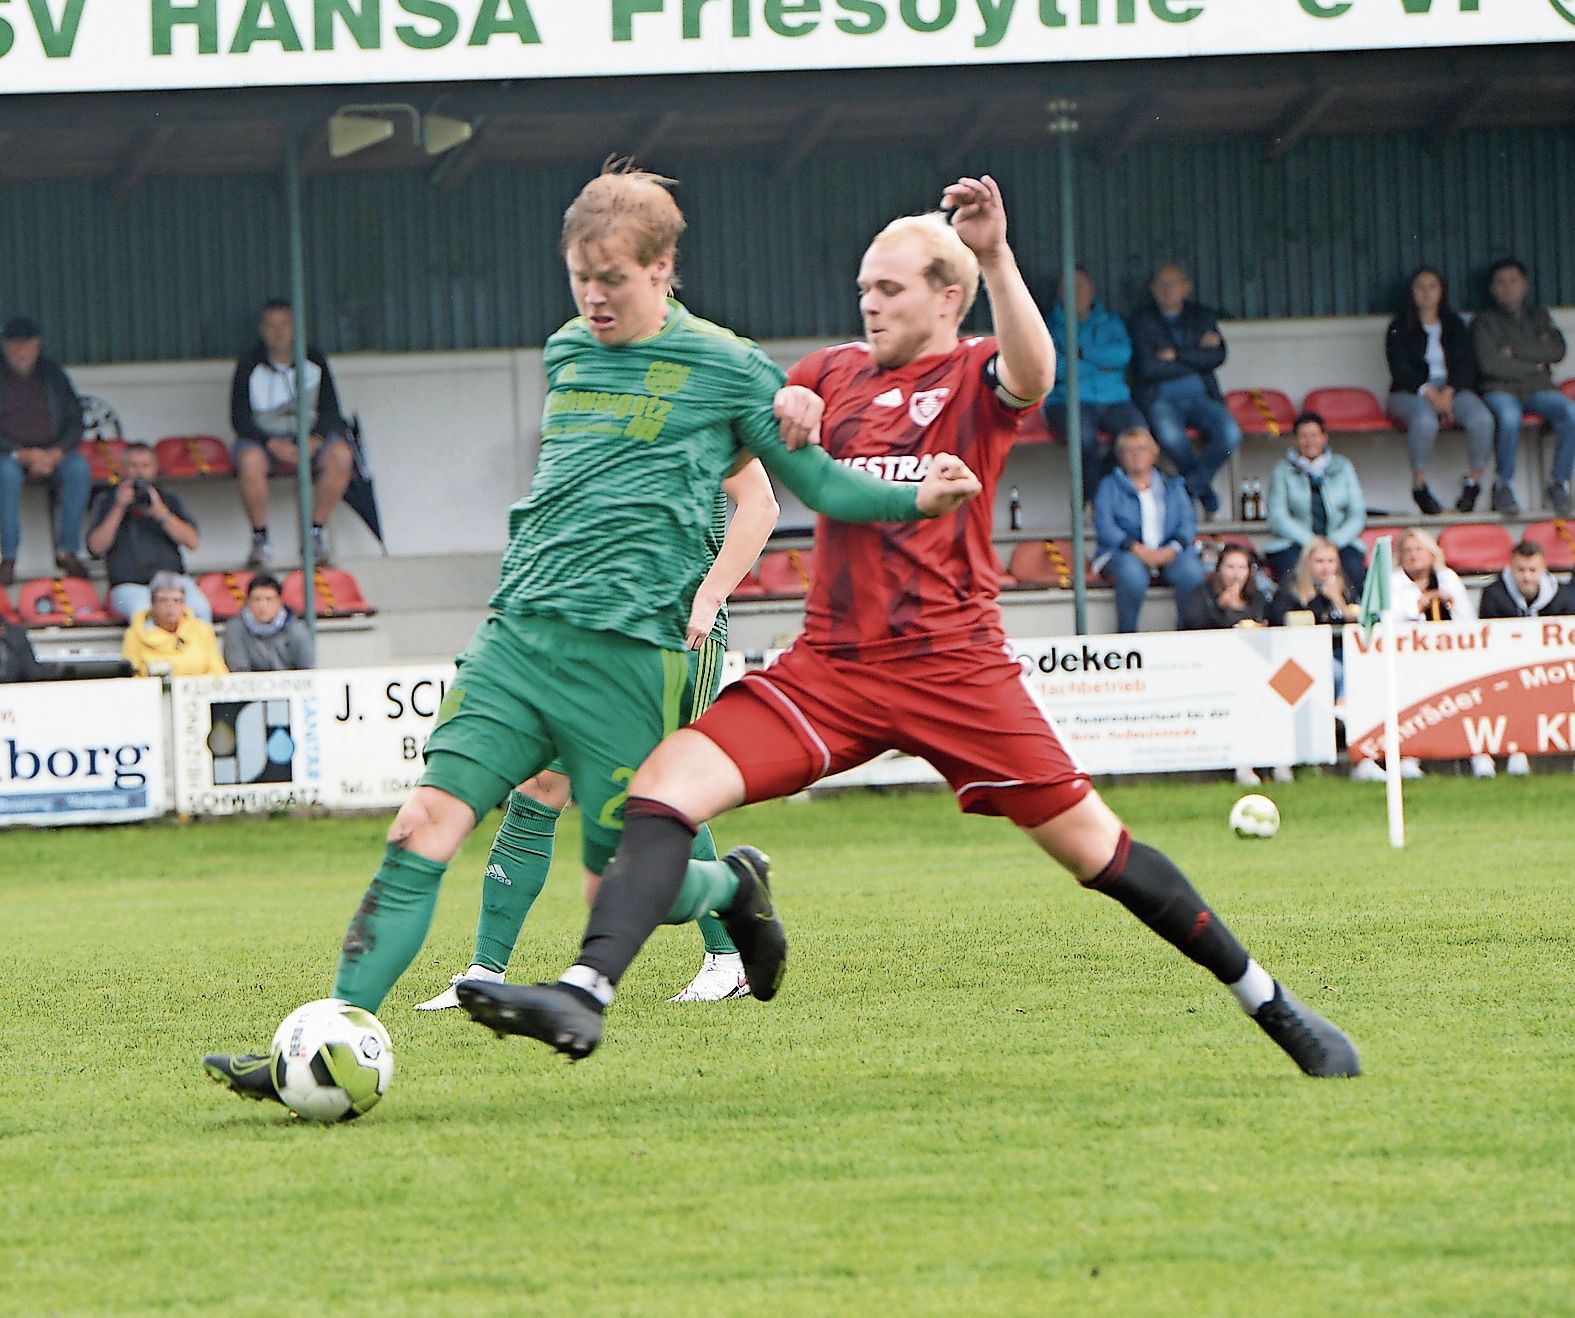 Feste Größe: Youngster Jeremy Knese (links) zählt bei Hansa Friesoythe zum Stammpersonal des Landesligakaders. Foto: Langosch